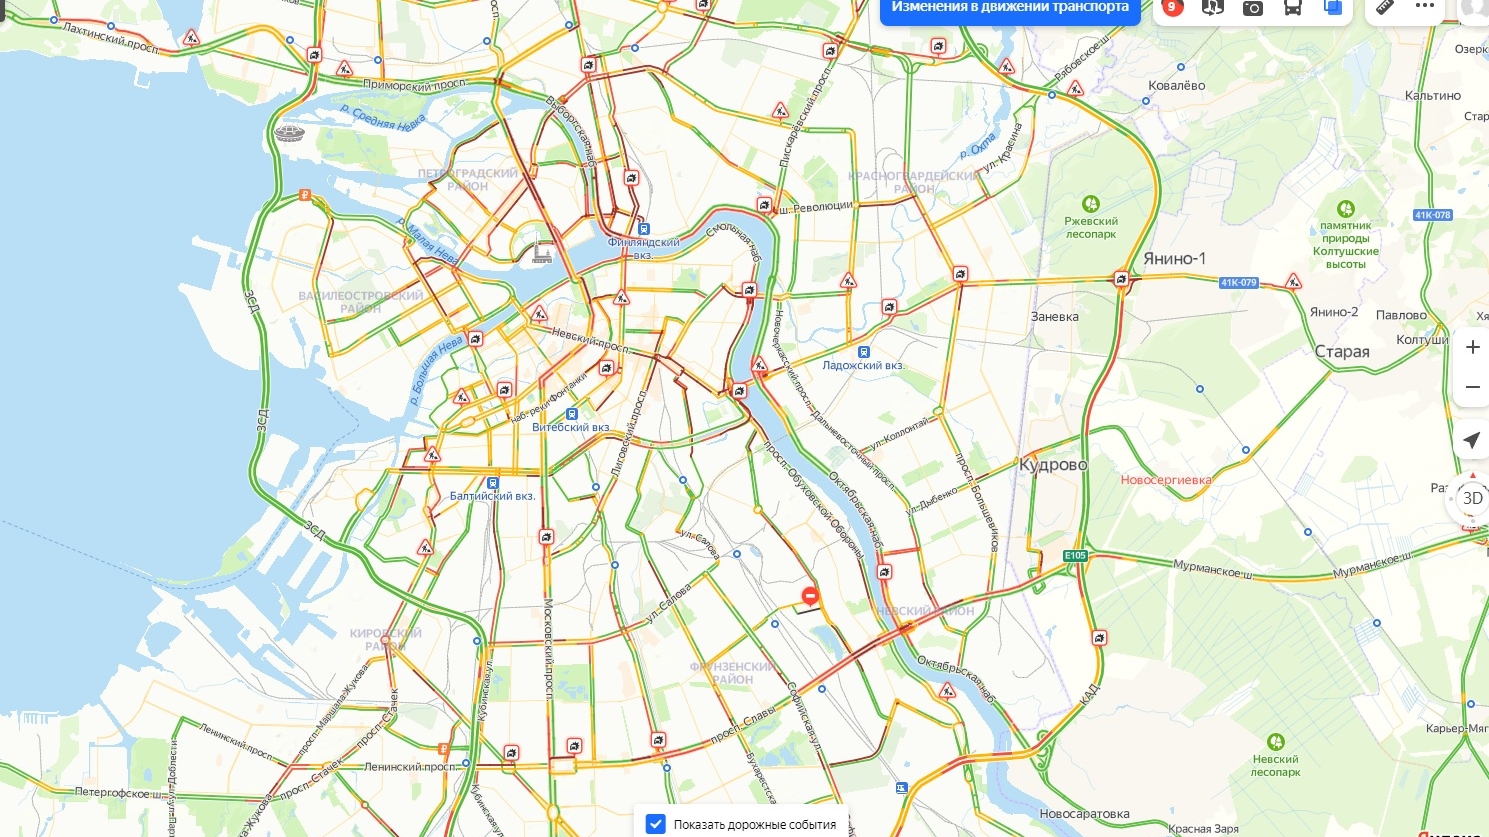 В последний рабочий день перед 8 марта движение машин в Петербурге почти остановилось